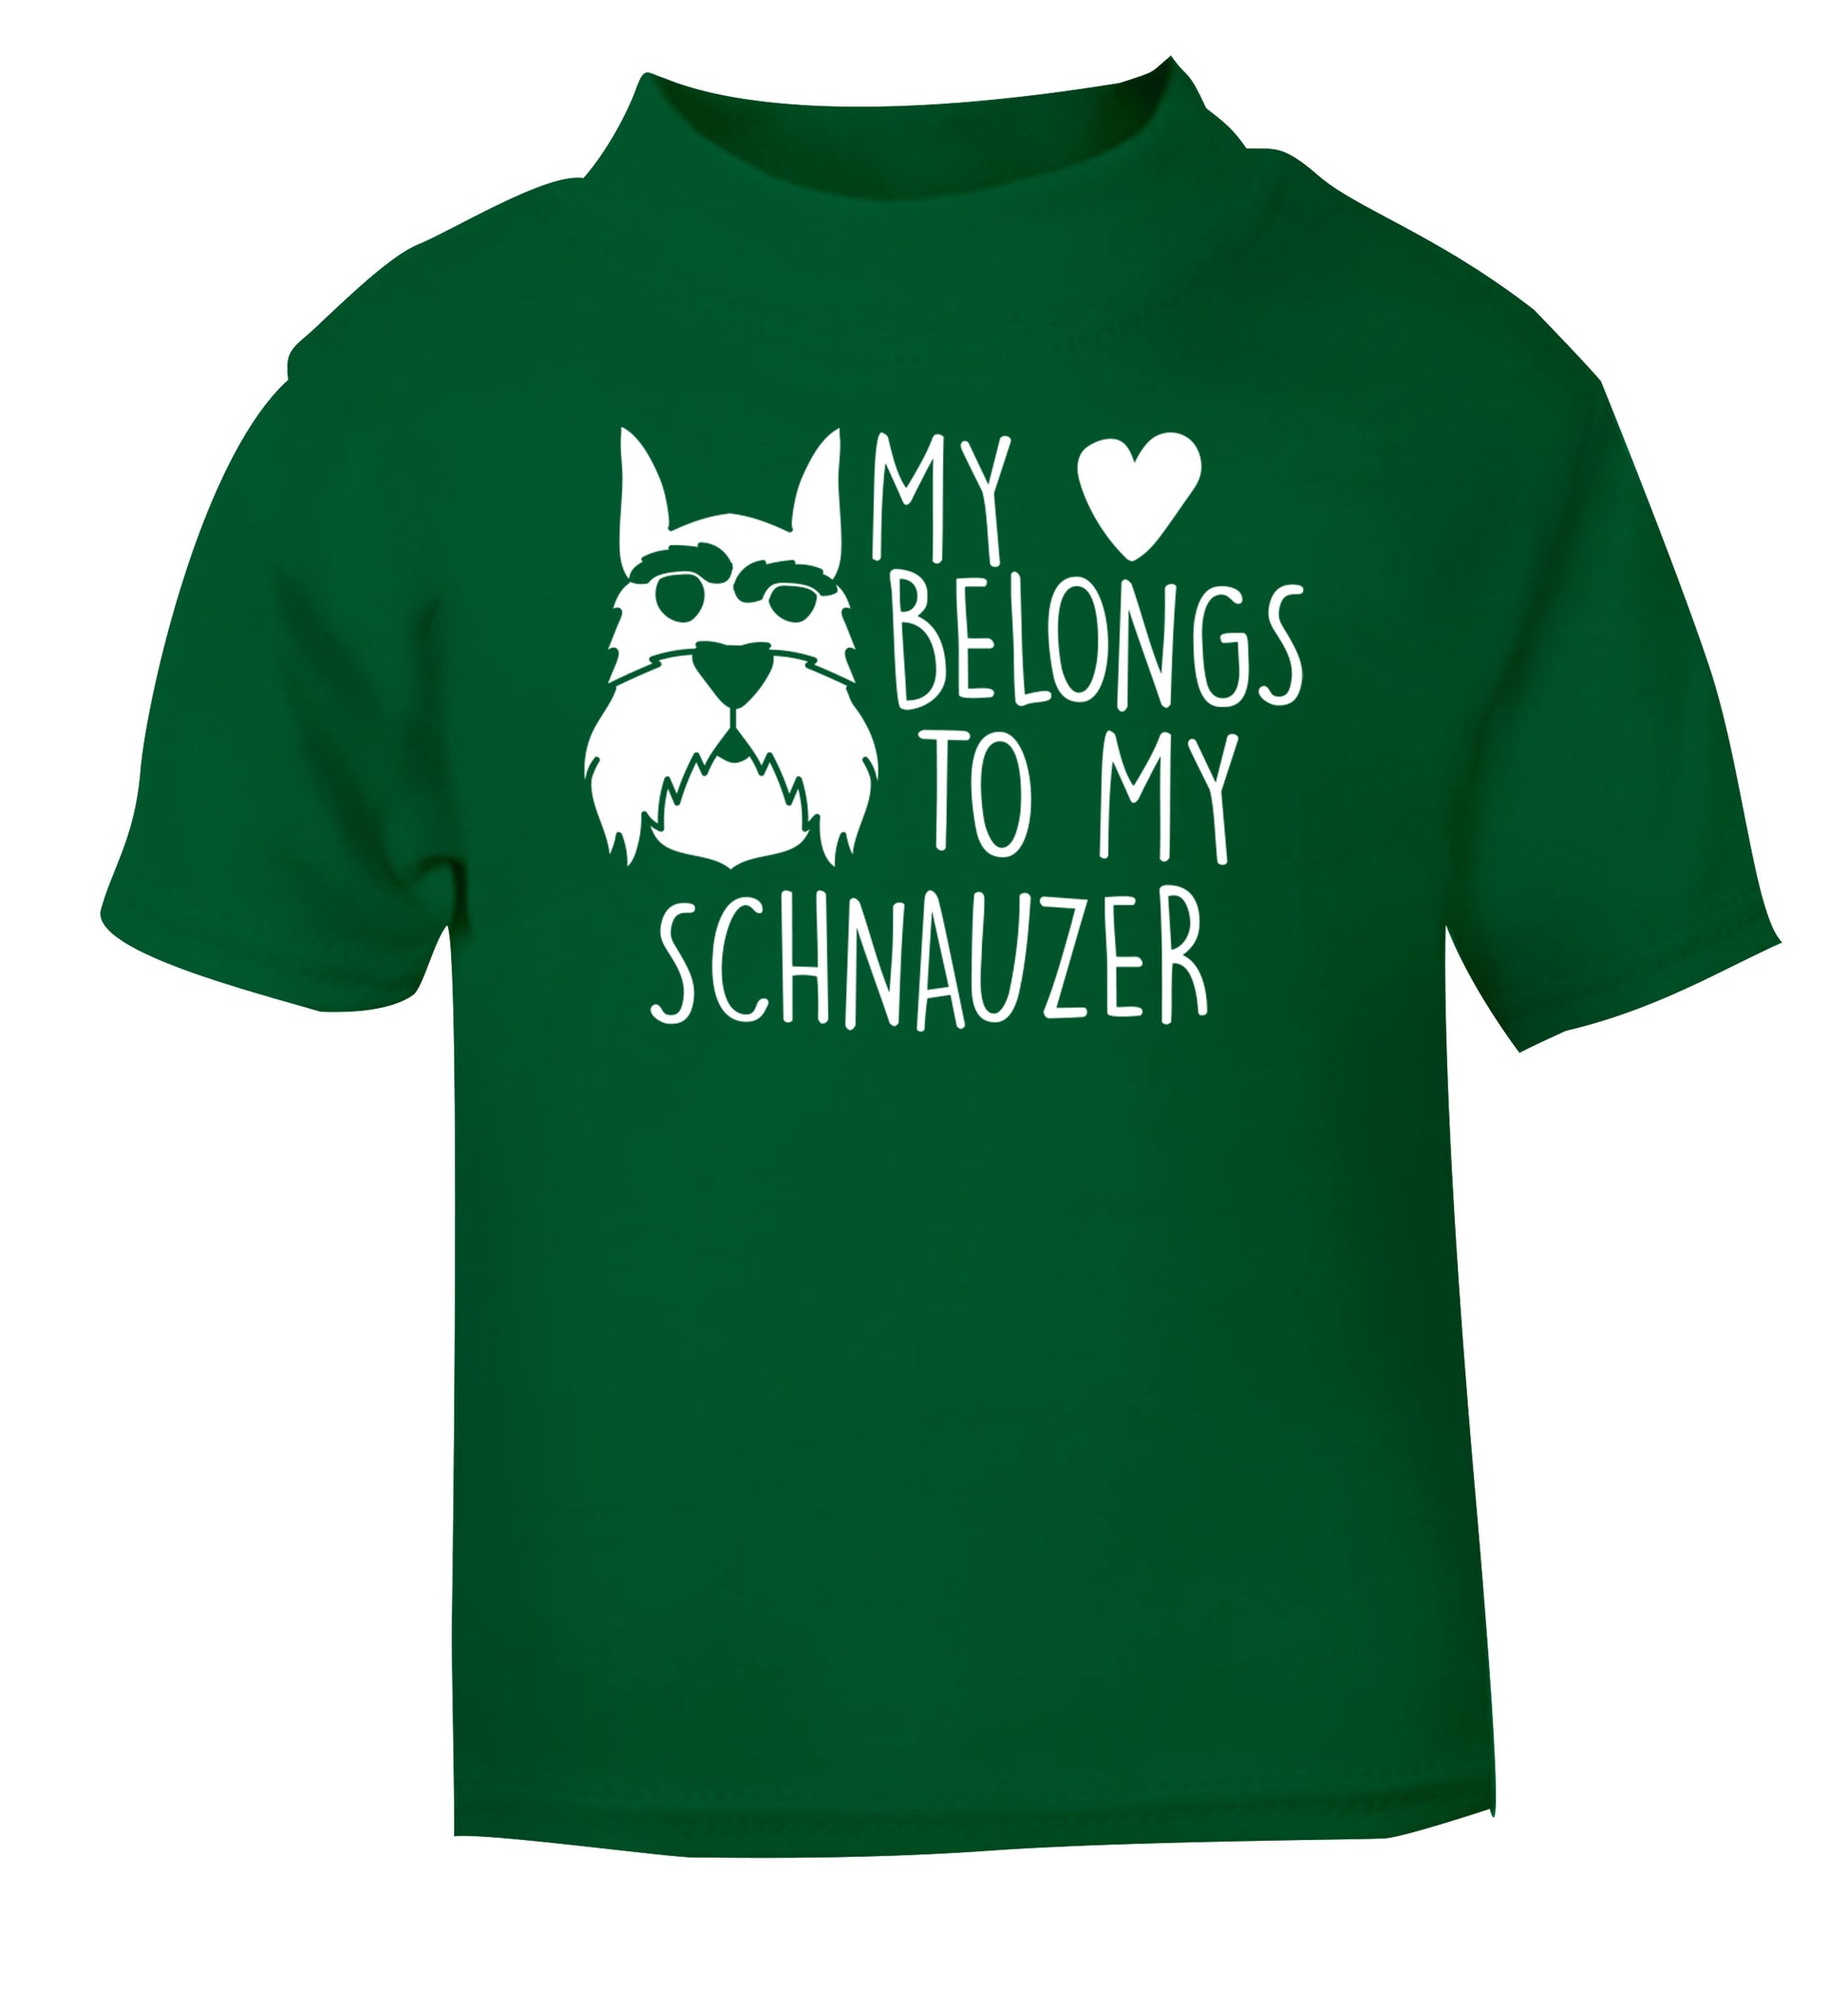 My heart belongs to my schnauzer green Baby Toddler Tshirt 2 Years